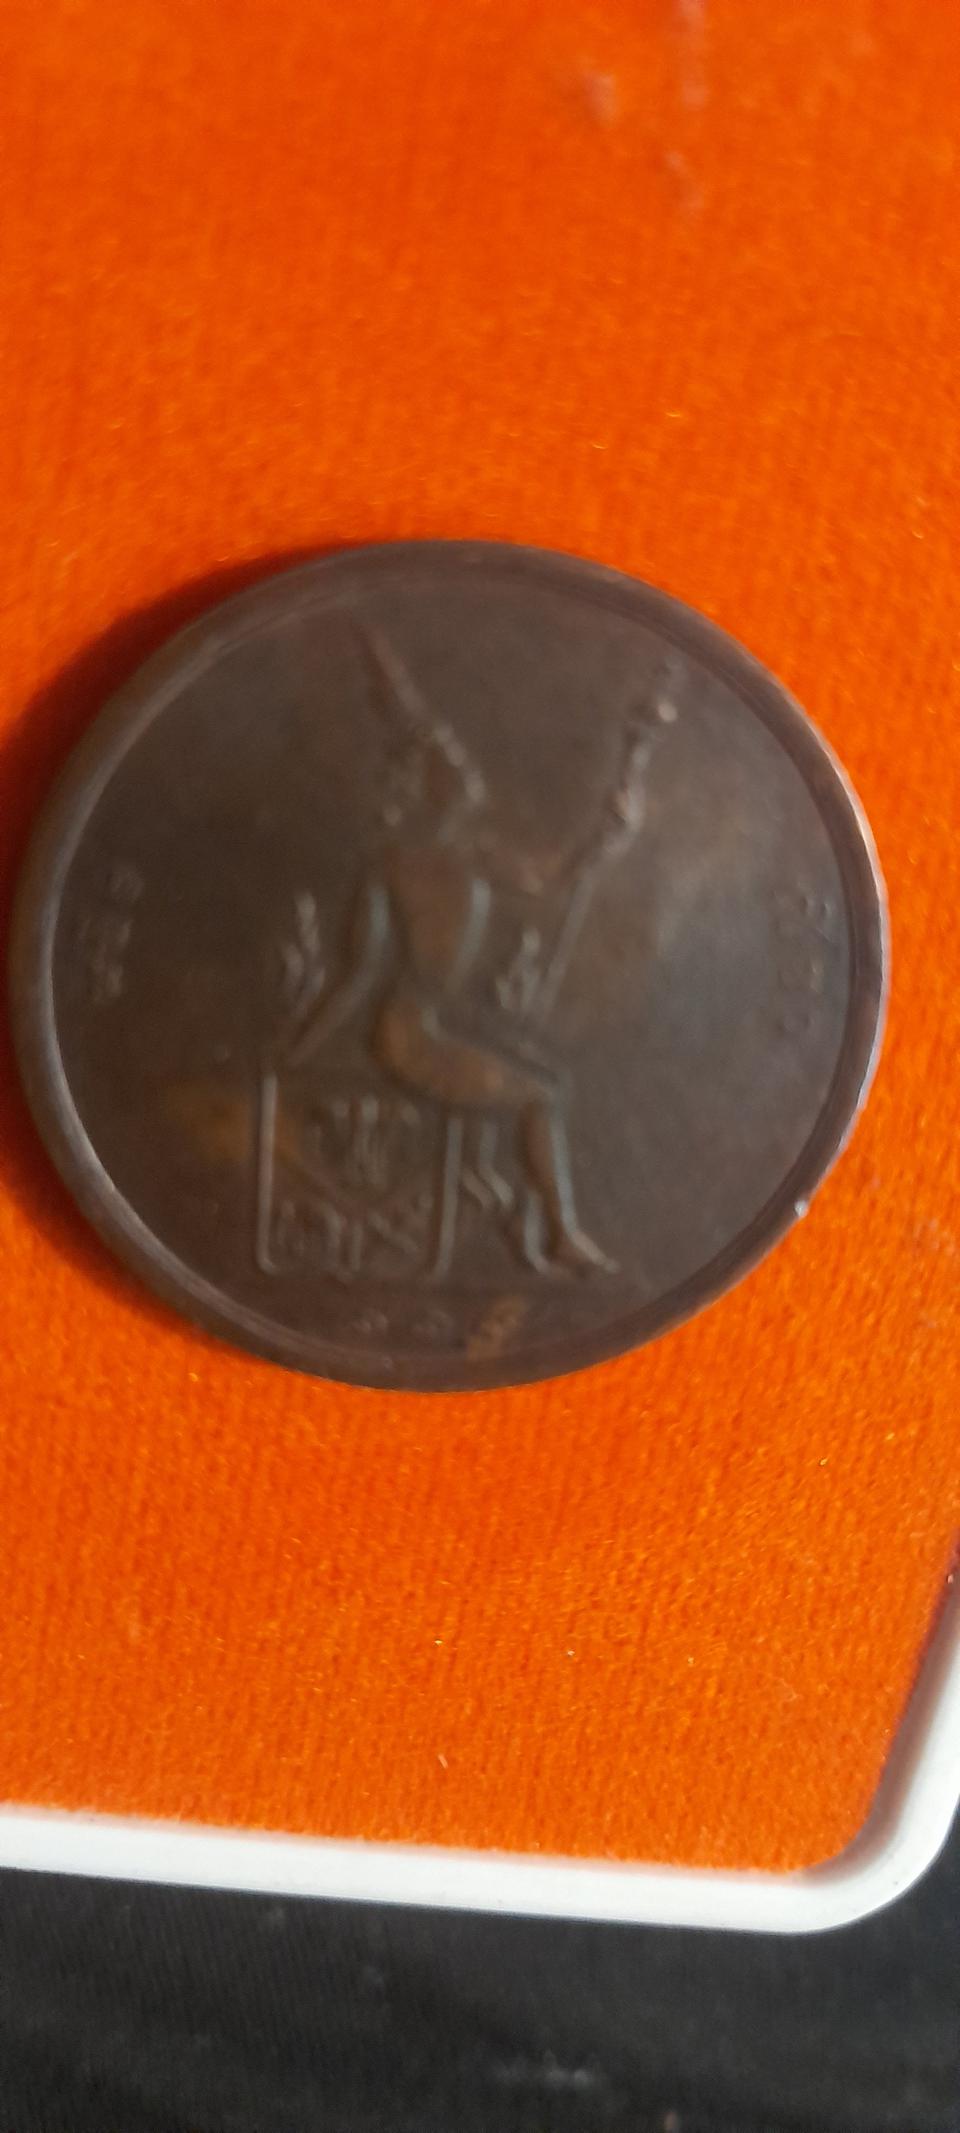 เหรียญทองแดง 1 เซี้ยว (2 อัฐ) ร.ศ.119 ปีหายาก สมัยรัชกาลที่ 5 สวย